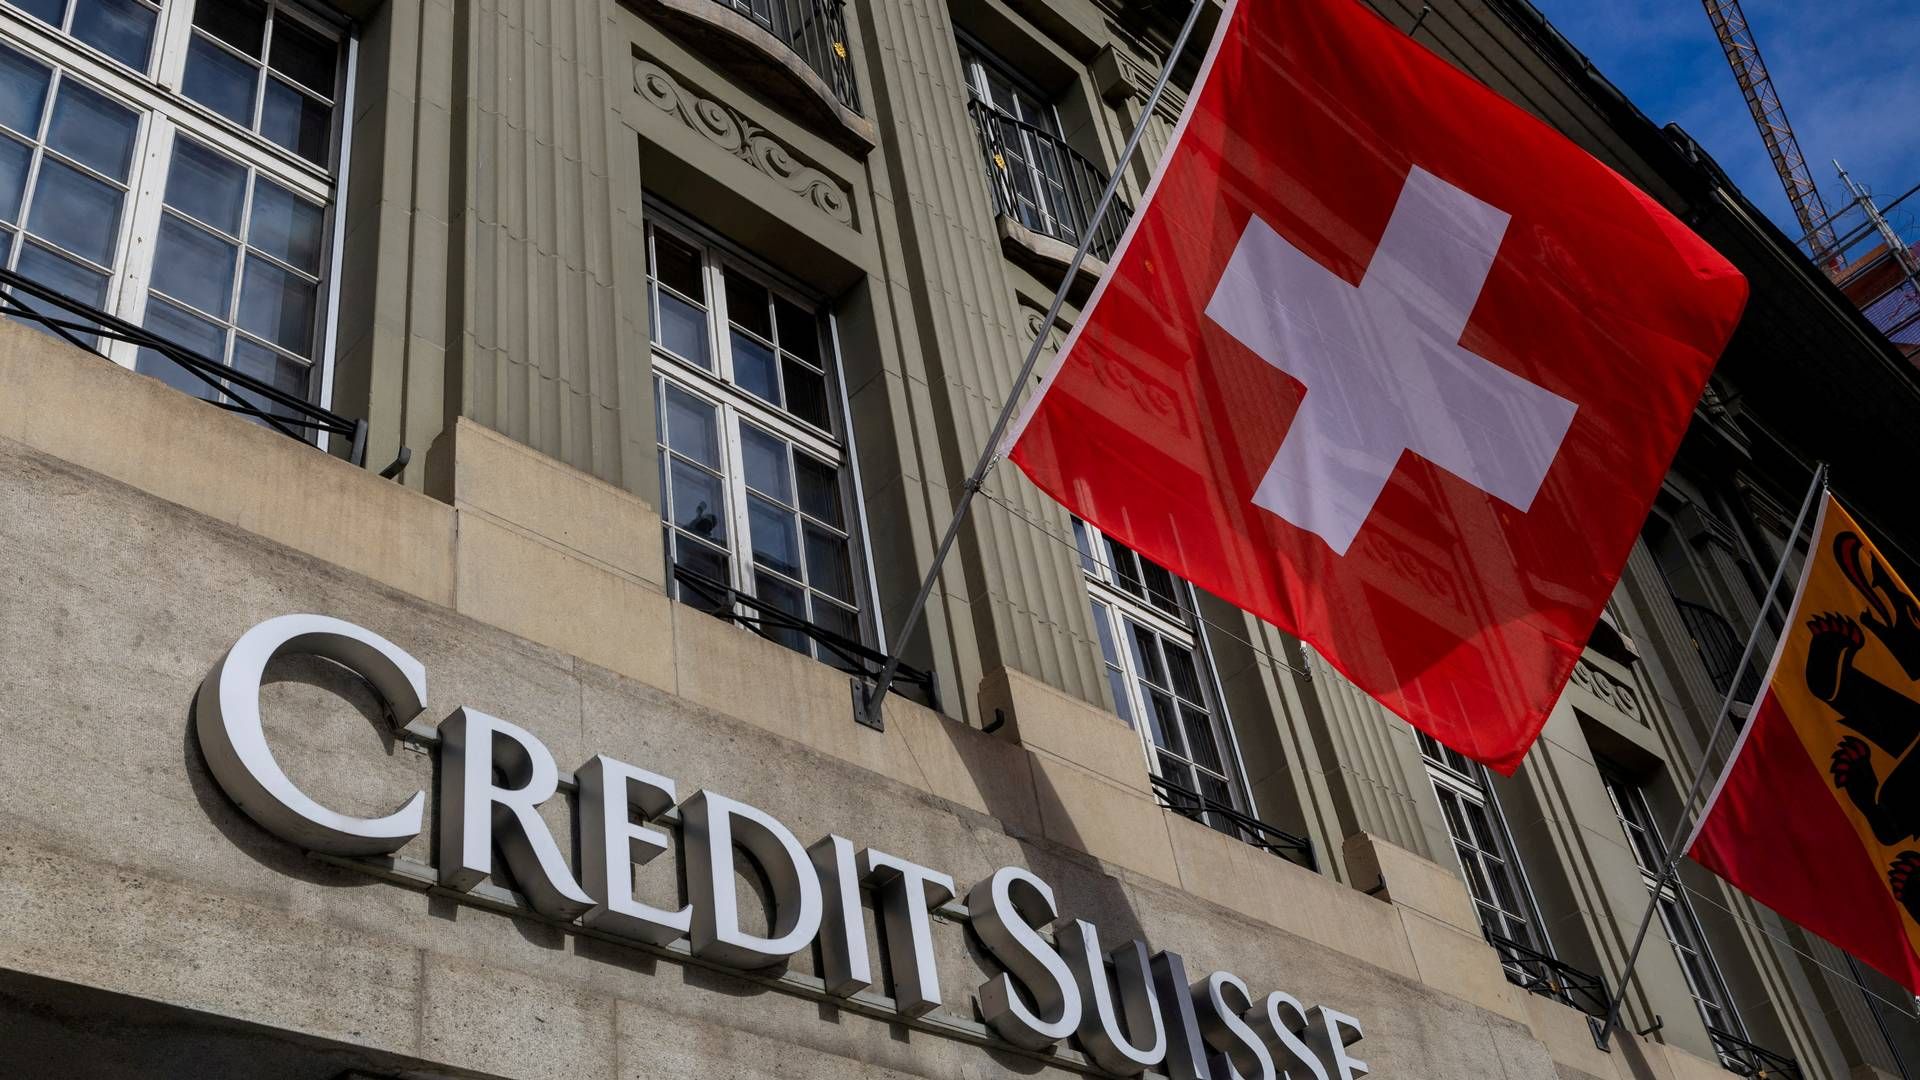 UBS overtog Credit Suisse sidste år, efter storbanken kom i økonomiske problemer. | Foto: Denis Balibouse